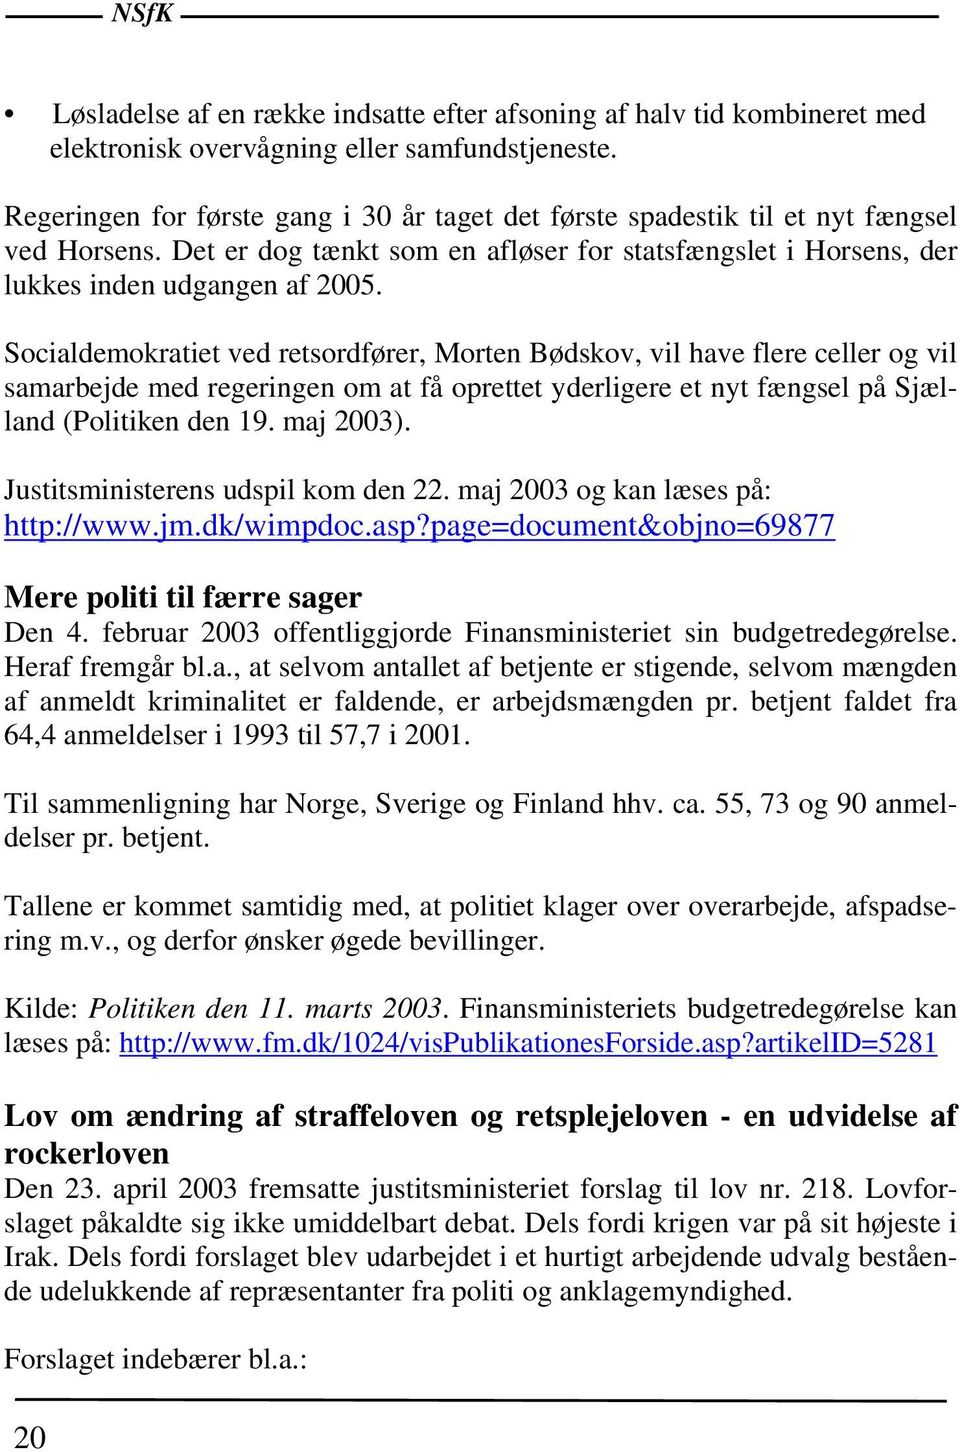 Socialdemokratiet ved retsordfører, Morten Bødskov, vil have flere celler og vil samarbejde med regeringen om at få oprettet yderligere et nyt fængsel på Sjælland (Politiken den 19. maj 2003).